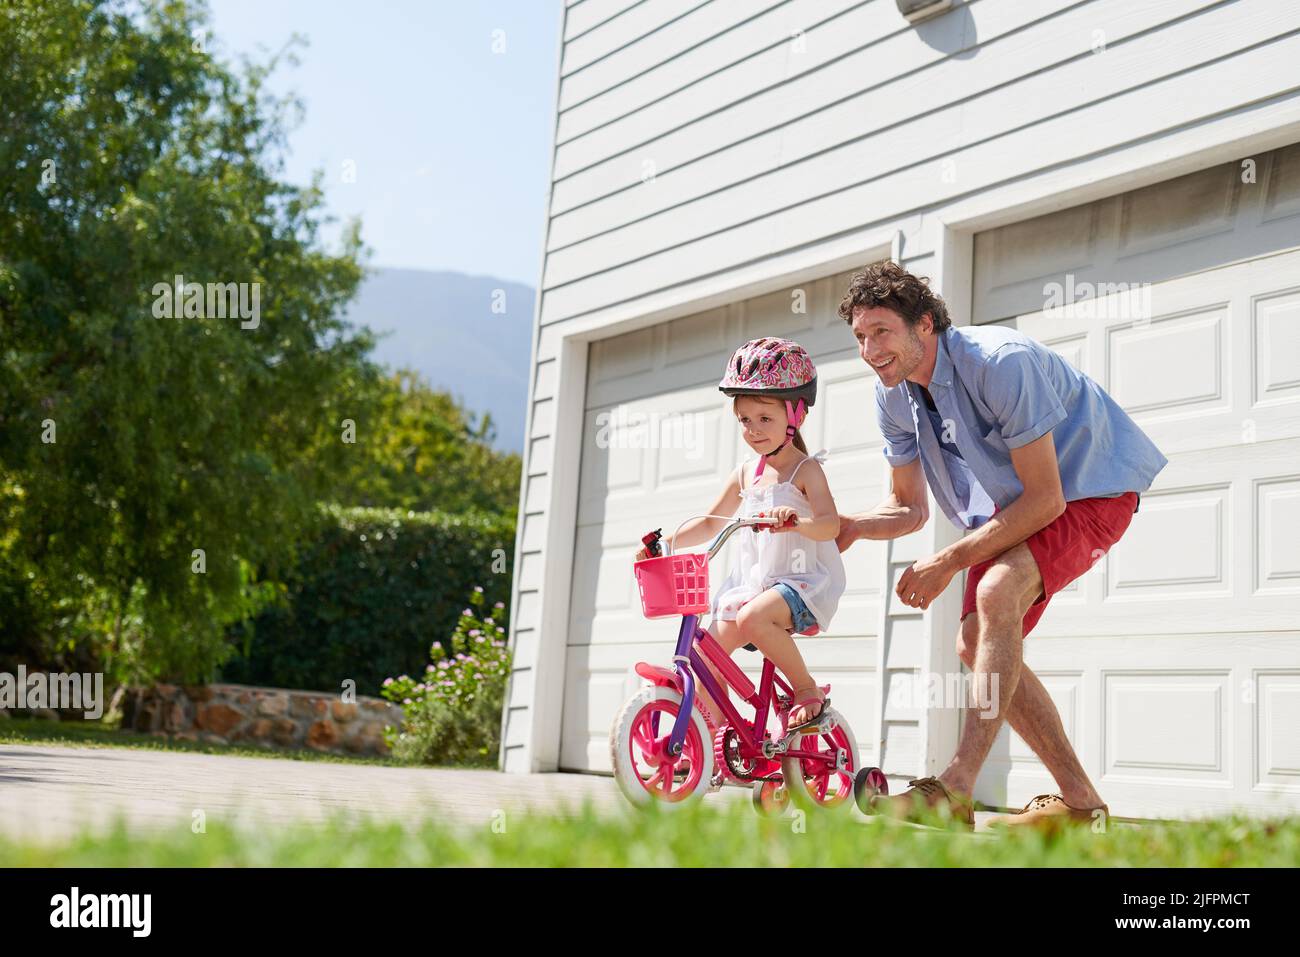 Ich glaube an eure Fähigkeiten. Aufnahme eines jungen Vaters, der seiner Tochter das Fahrradfahren beibringt. Stockfoto